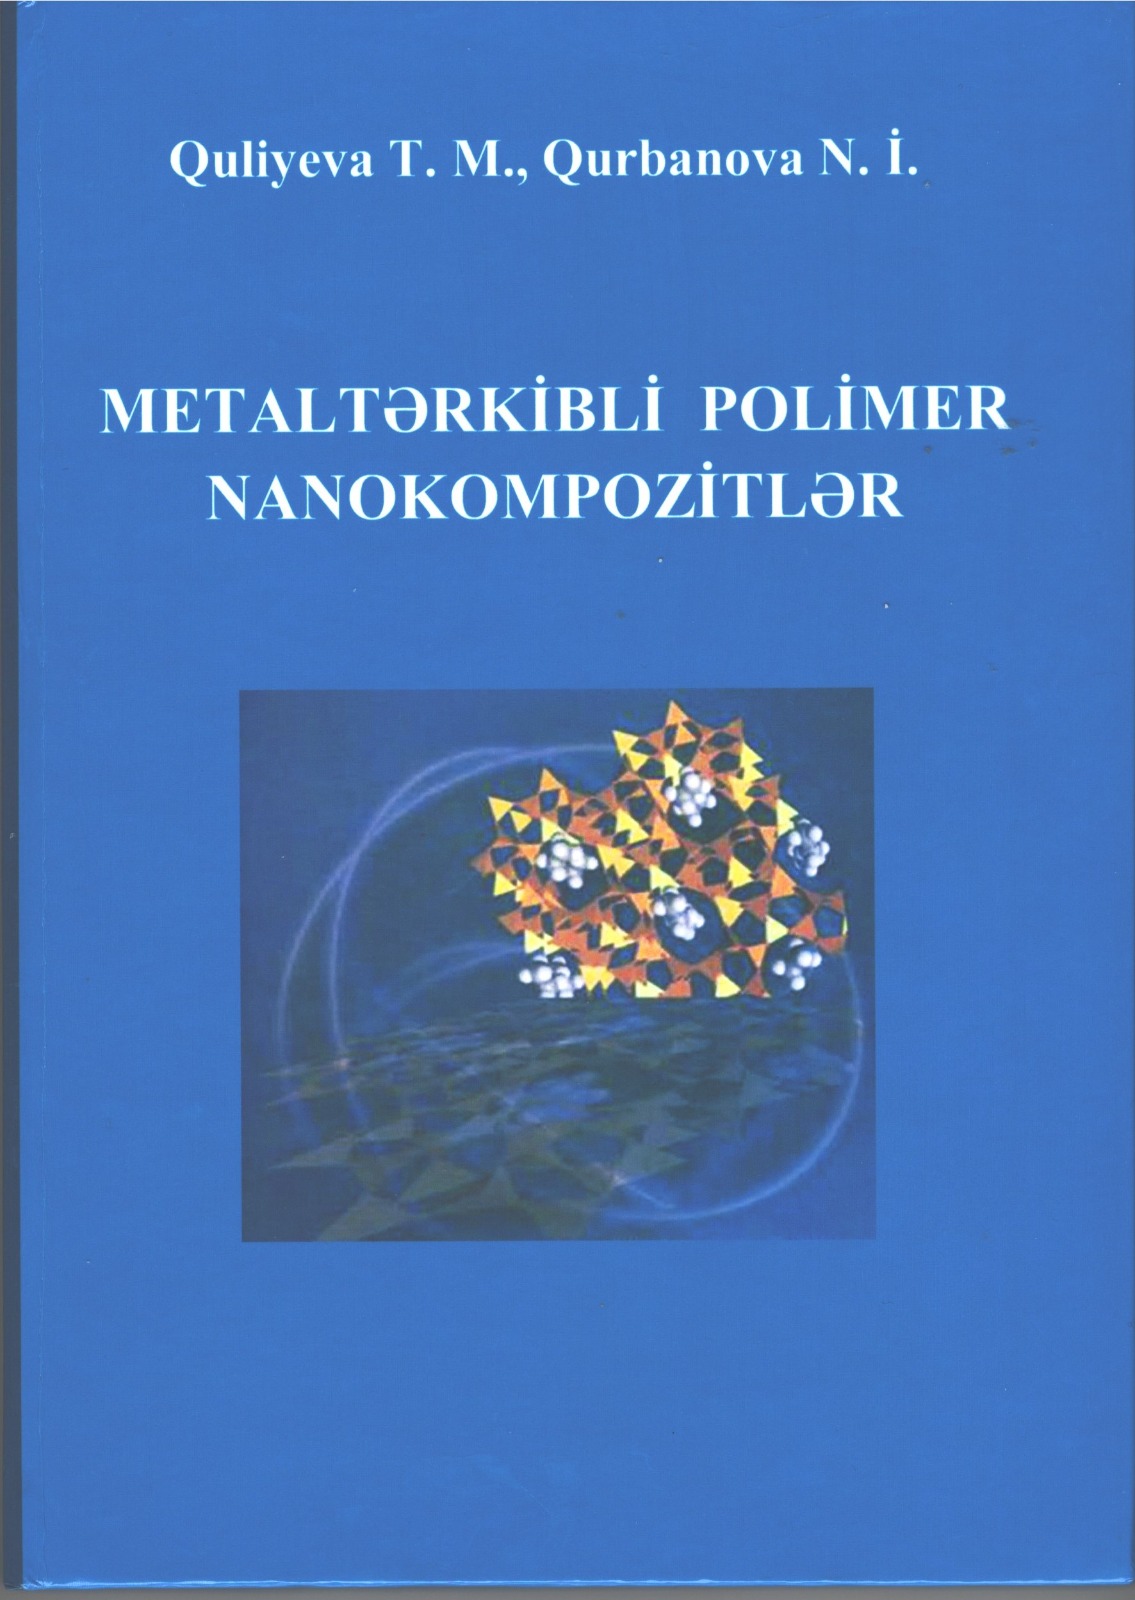 “Metaltərkibli polimer nanokompozitlər” adlı monoqrafiya nəşr olunub